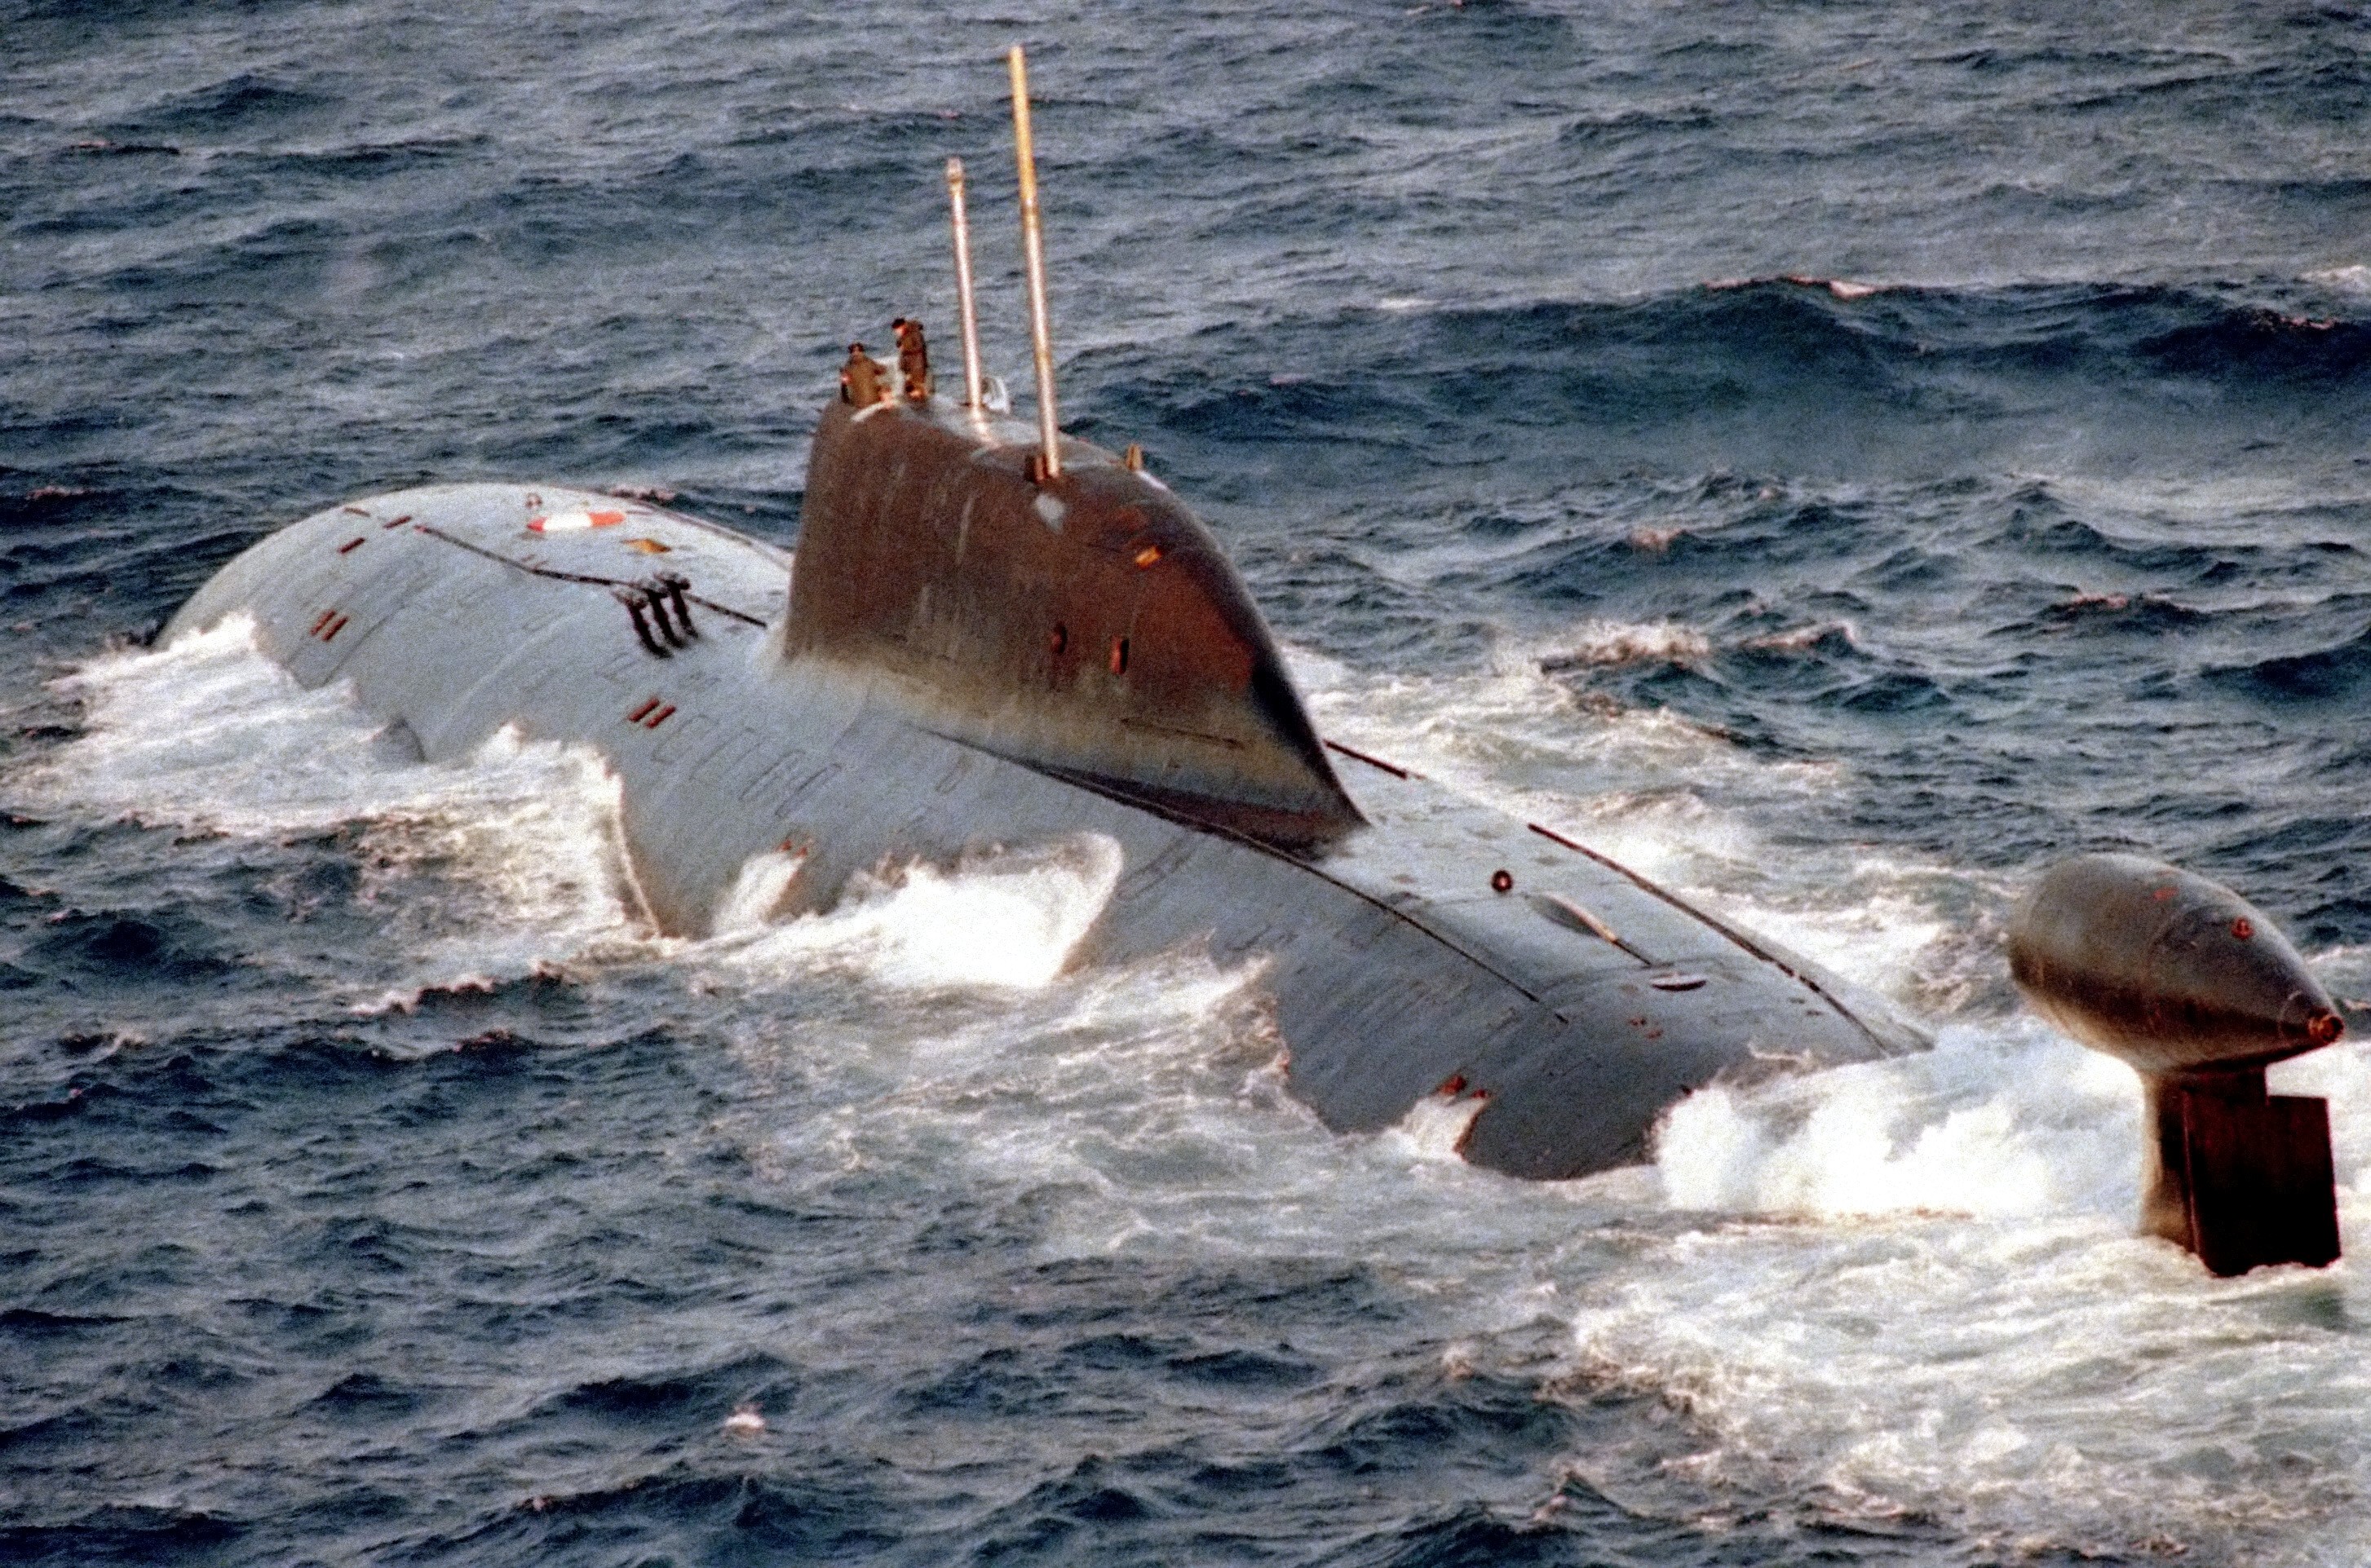 971型攻擊核潛艇